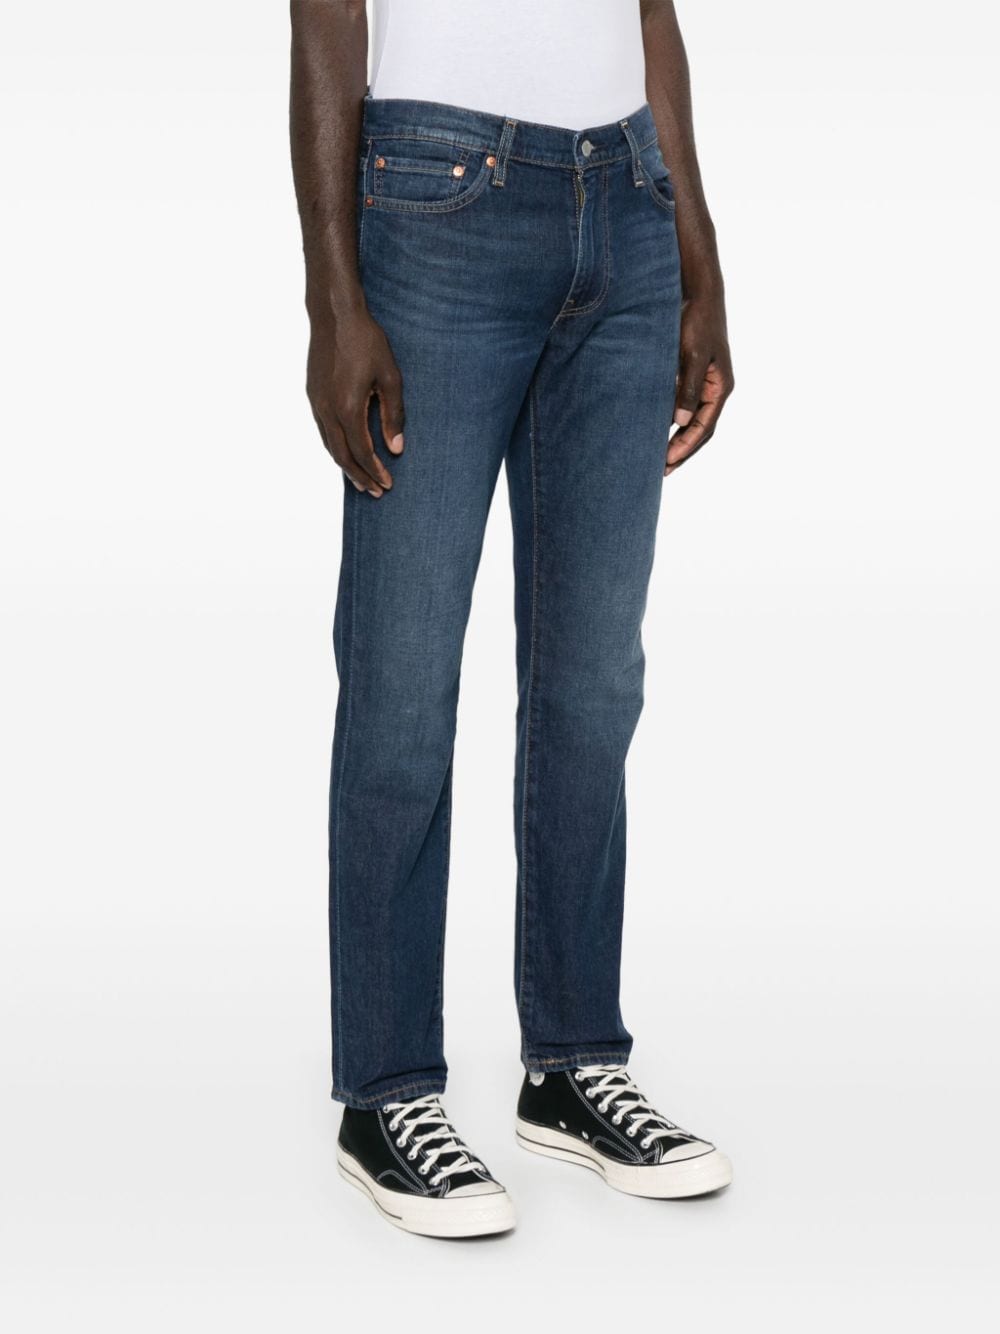 511 slim-cut jeans<BR/><BR/>